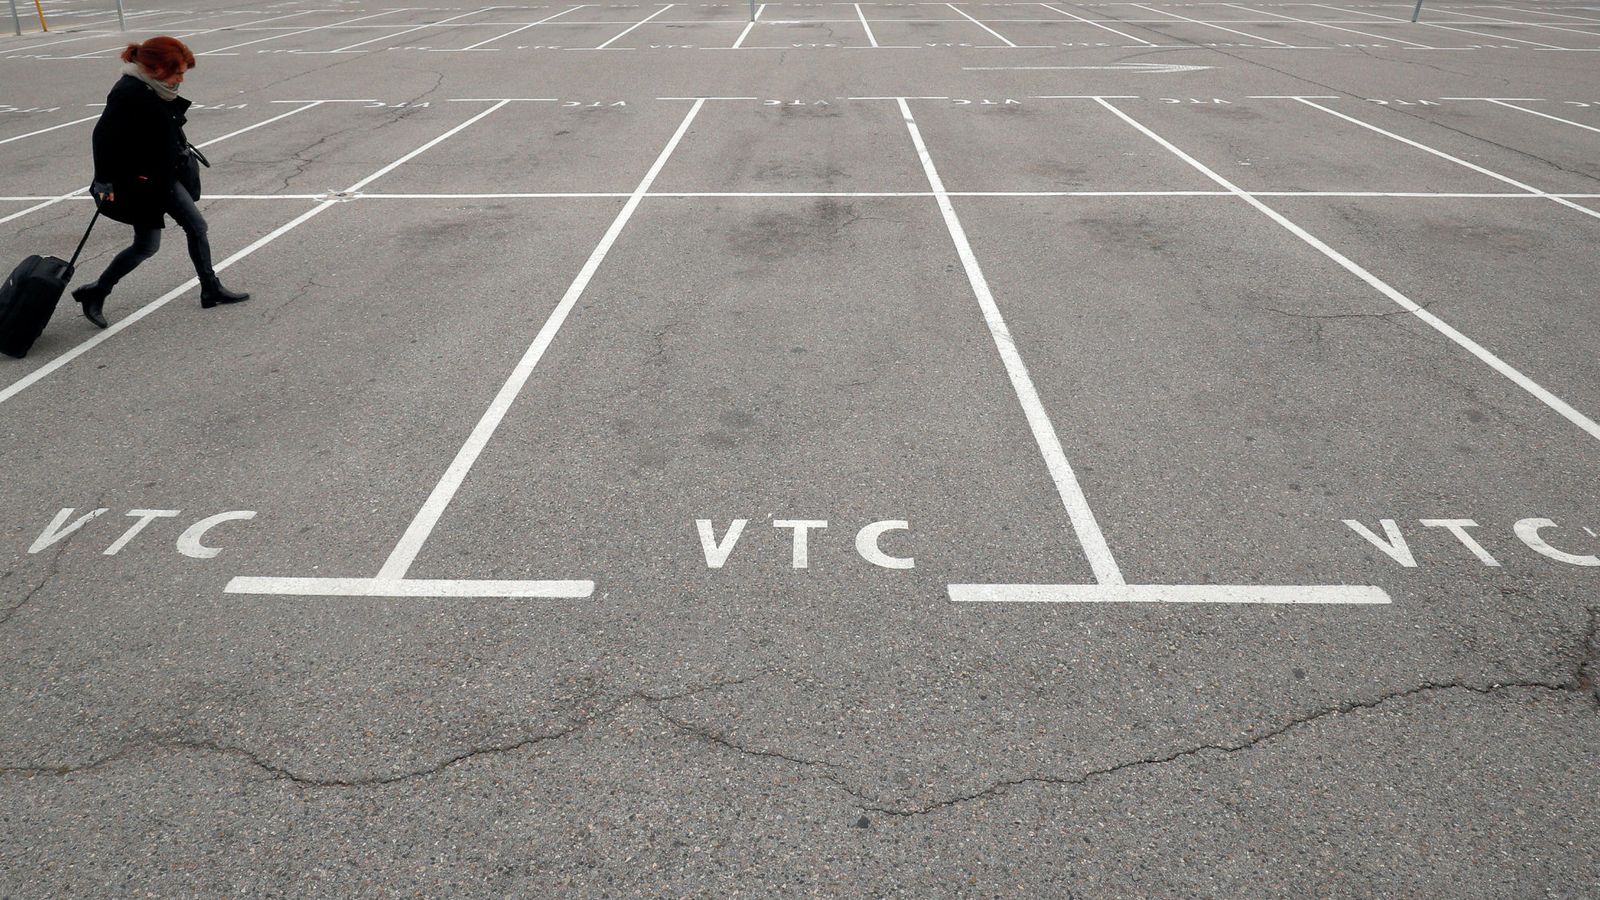 Foto: Una mujer camina por un aparcamiento vacío reservado a vehículos VTC en el aeropuerto de Barcelona. (Reuters)